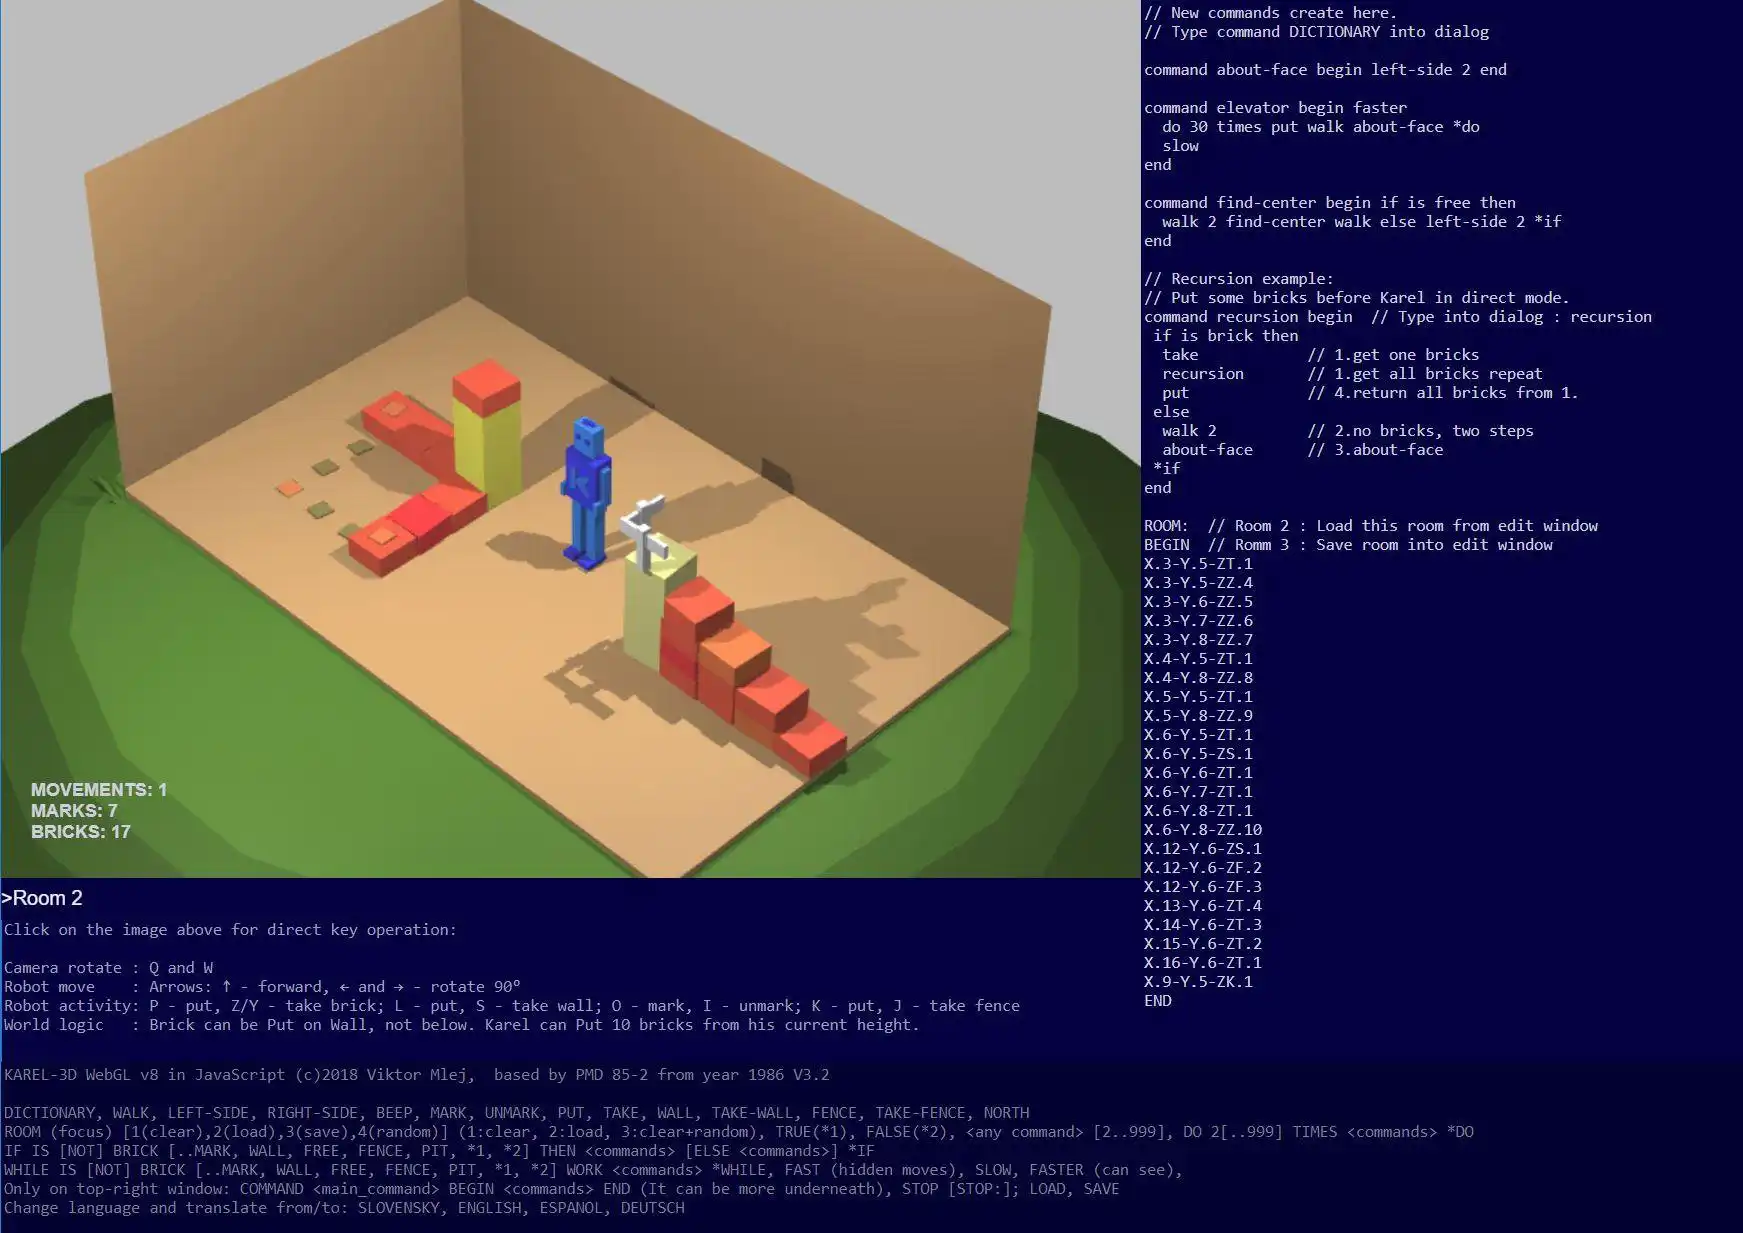 웹 도구 또는 웹 앱 KAREL 3D WebGL을 다운로드하여 Linux 온라인에서 실행